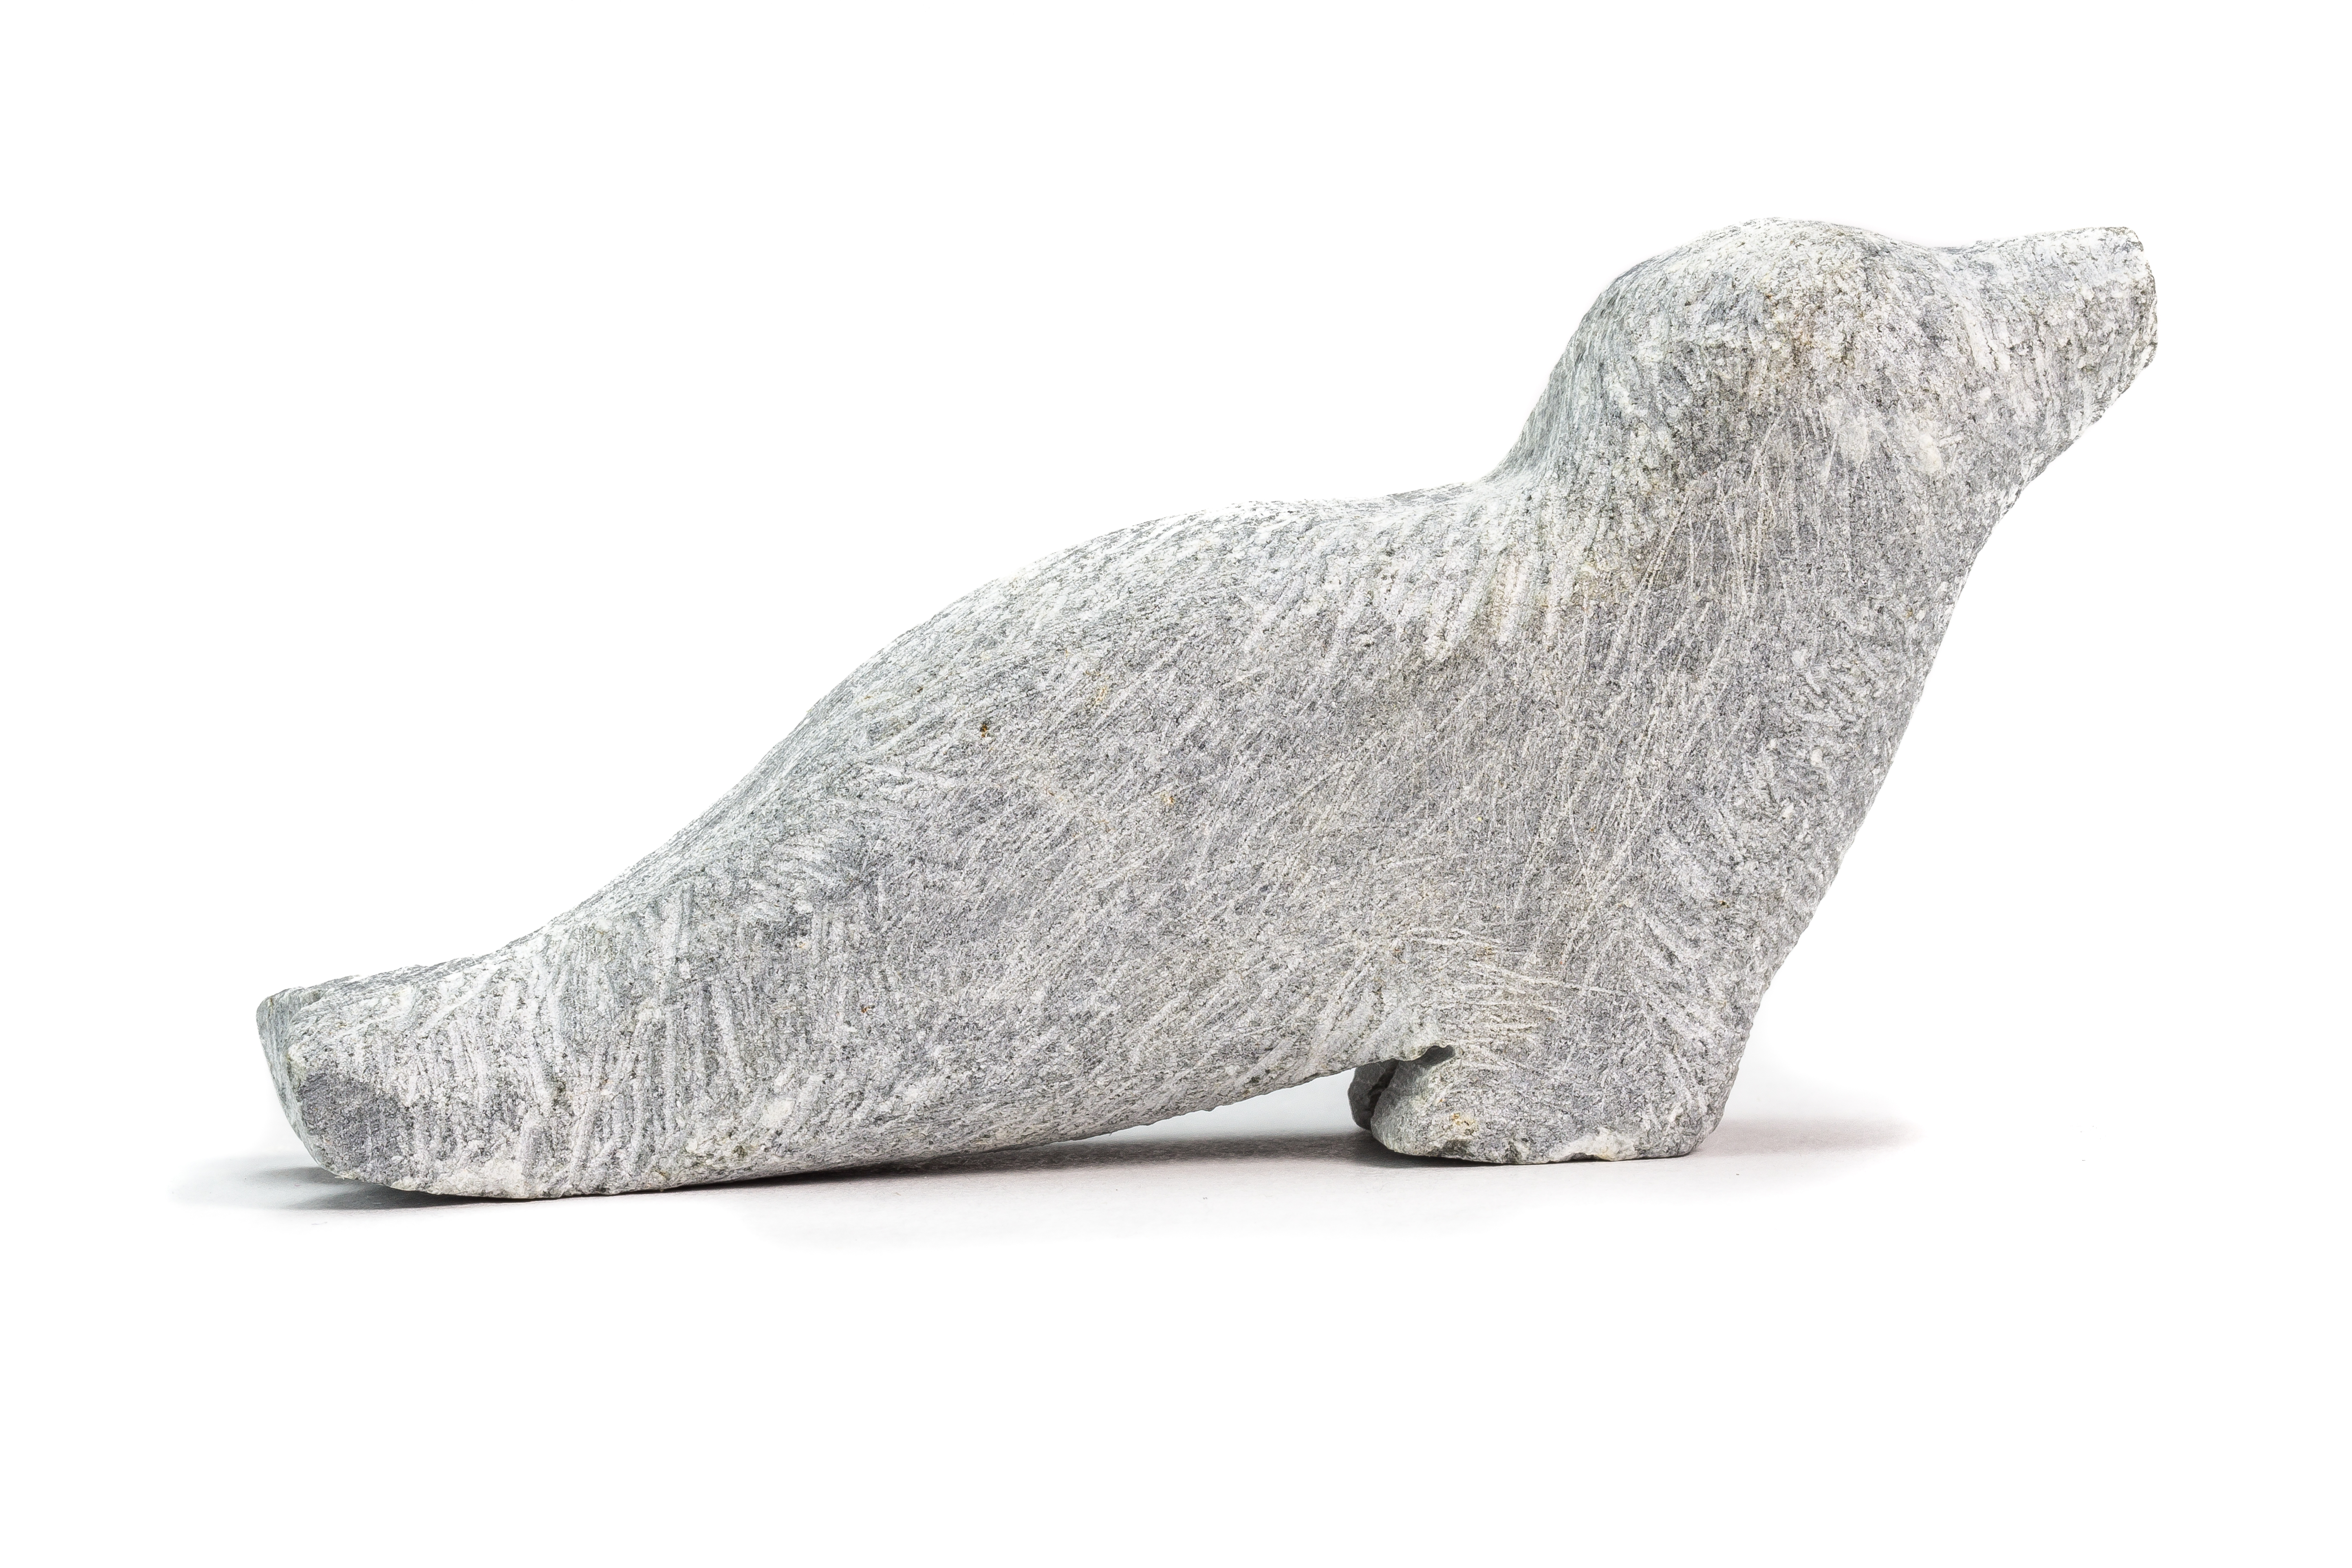 Première phase de la sculpture d'un phoque sur de la pierre à savon